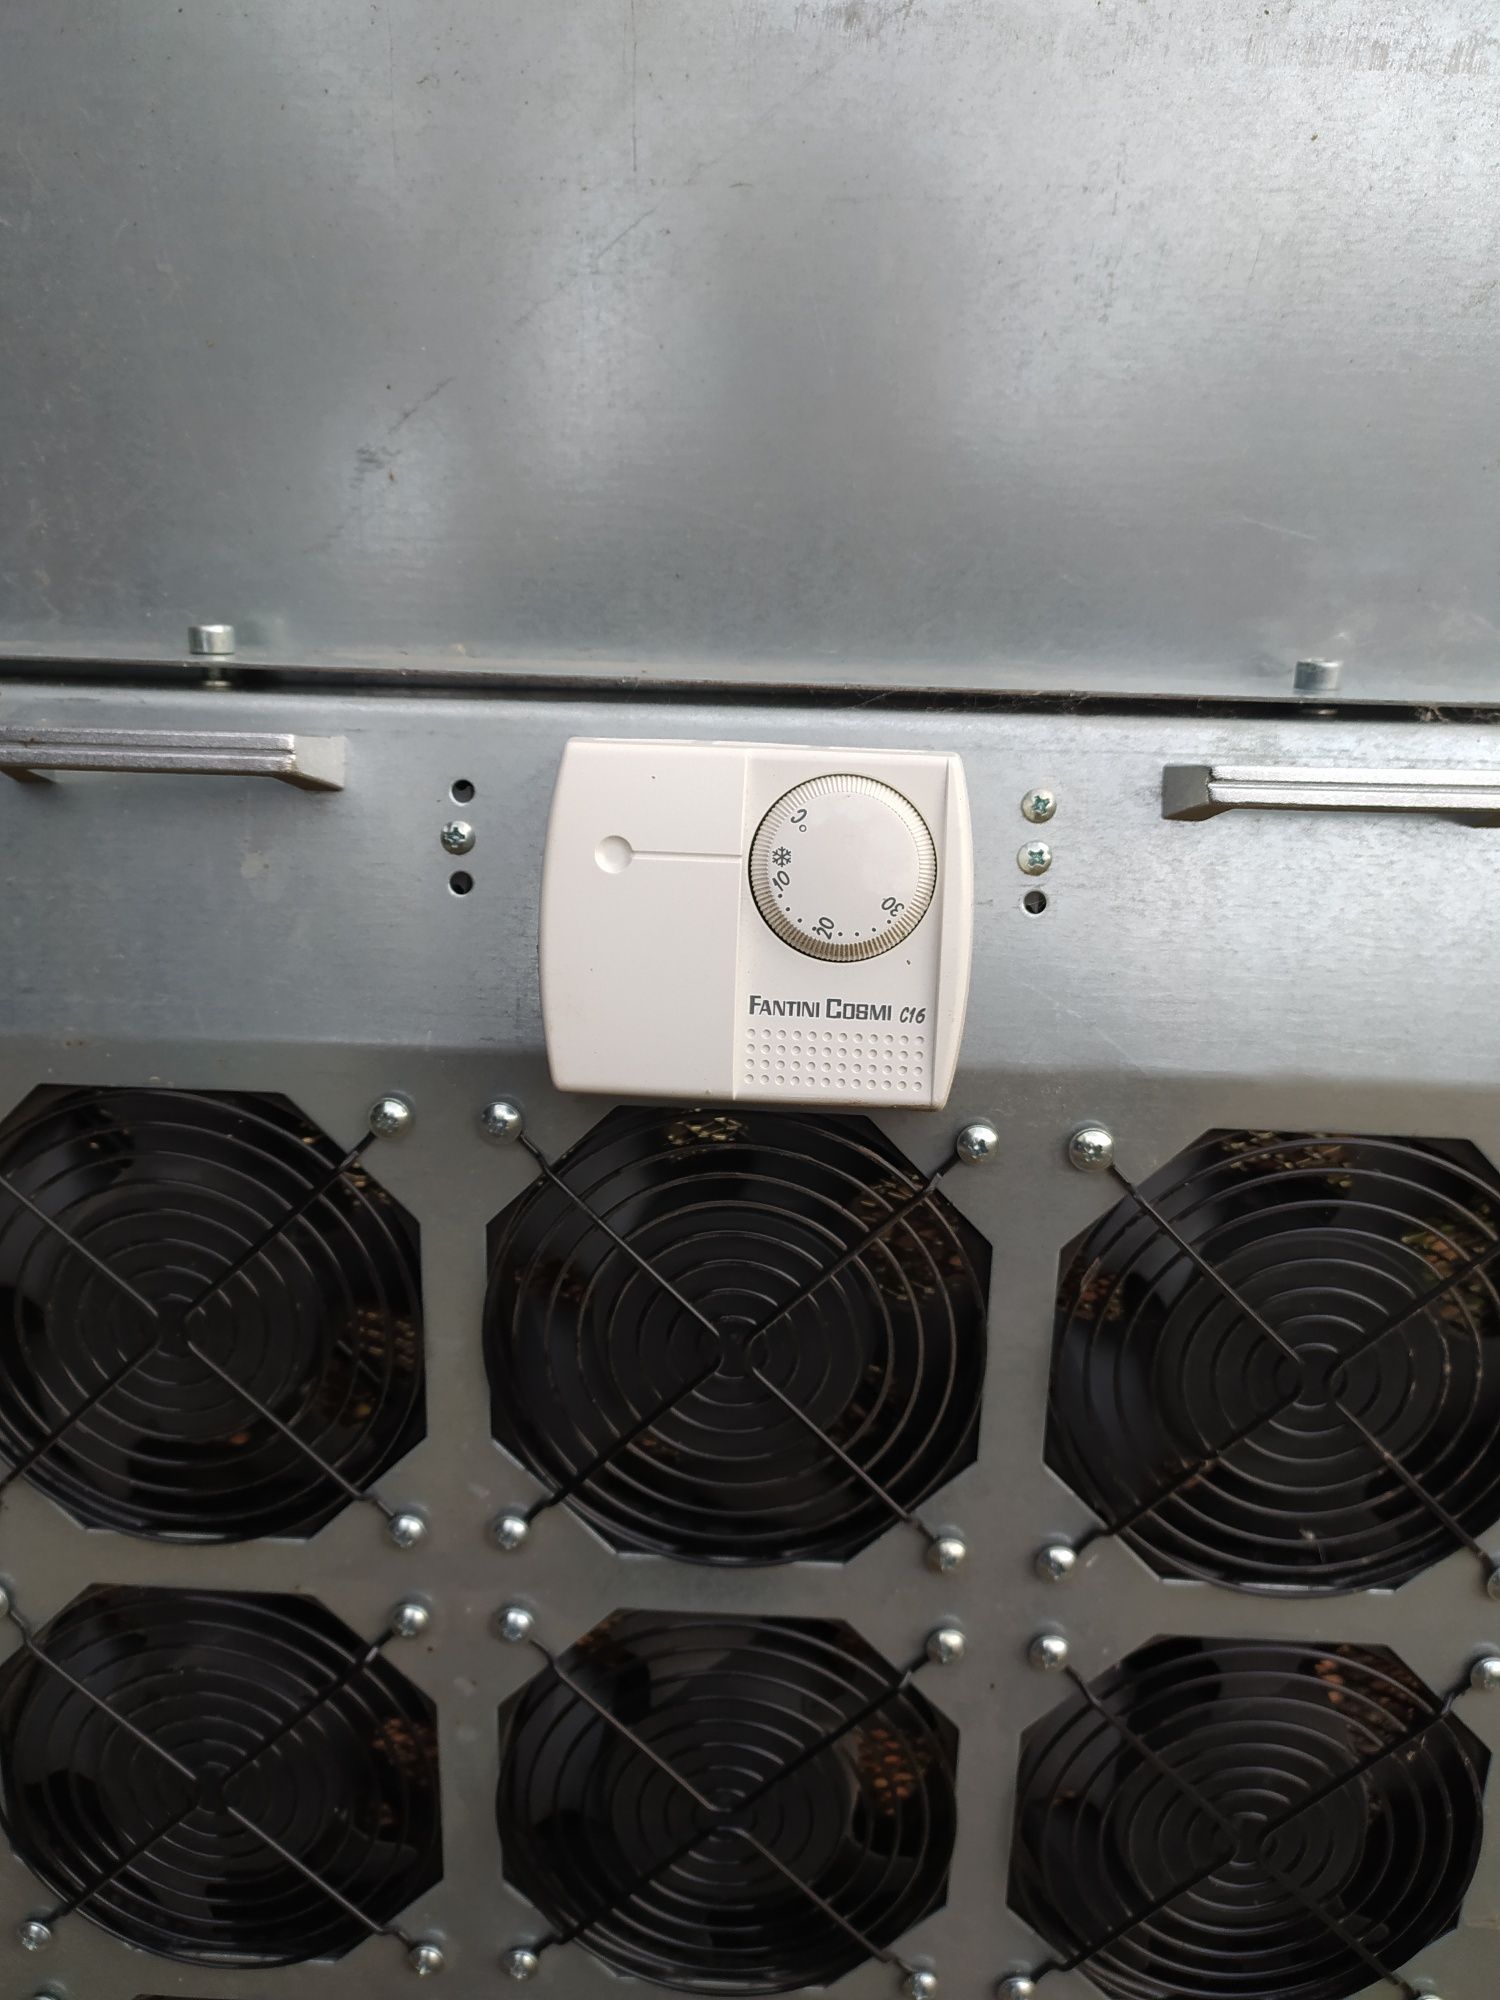 12-ти вентиляторный модуль для серверного шкафа, серверной стойки.